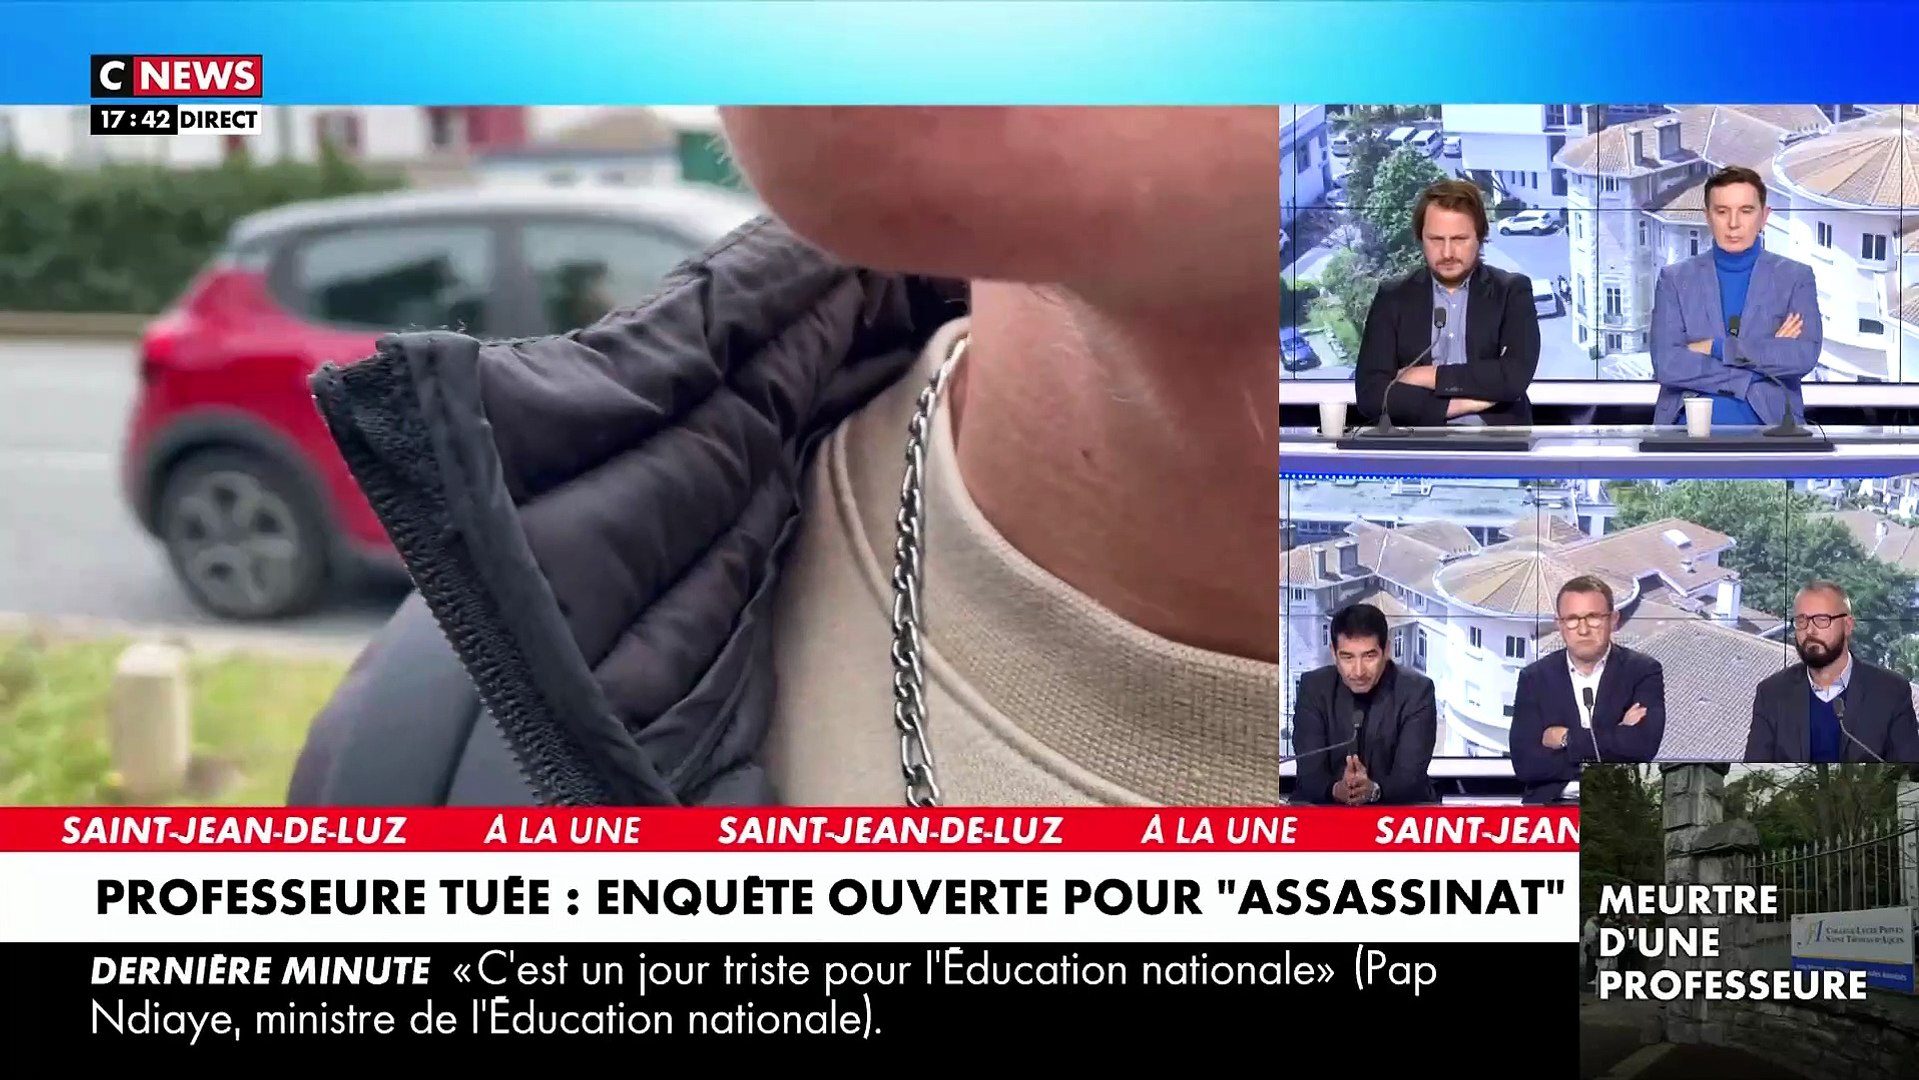 Meurtre d'une prof ce matin à St-Jean-de-Luz - Un élève présent lors de  l'agression raconte sur CNews - Vidéo Dailymotion